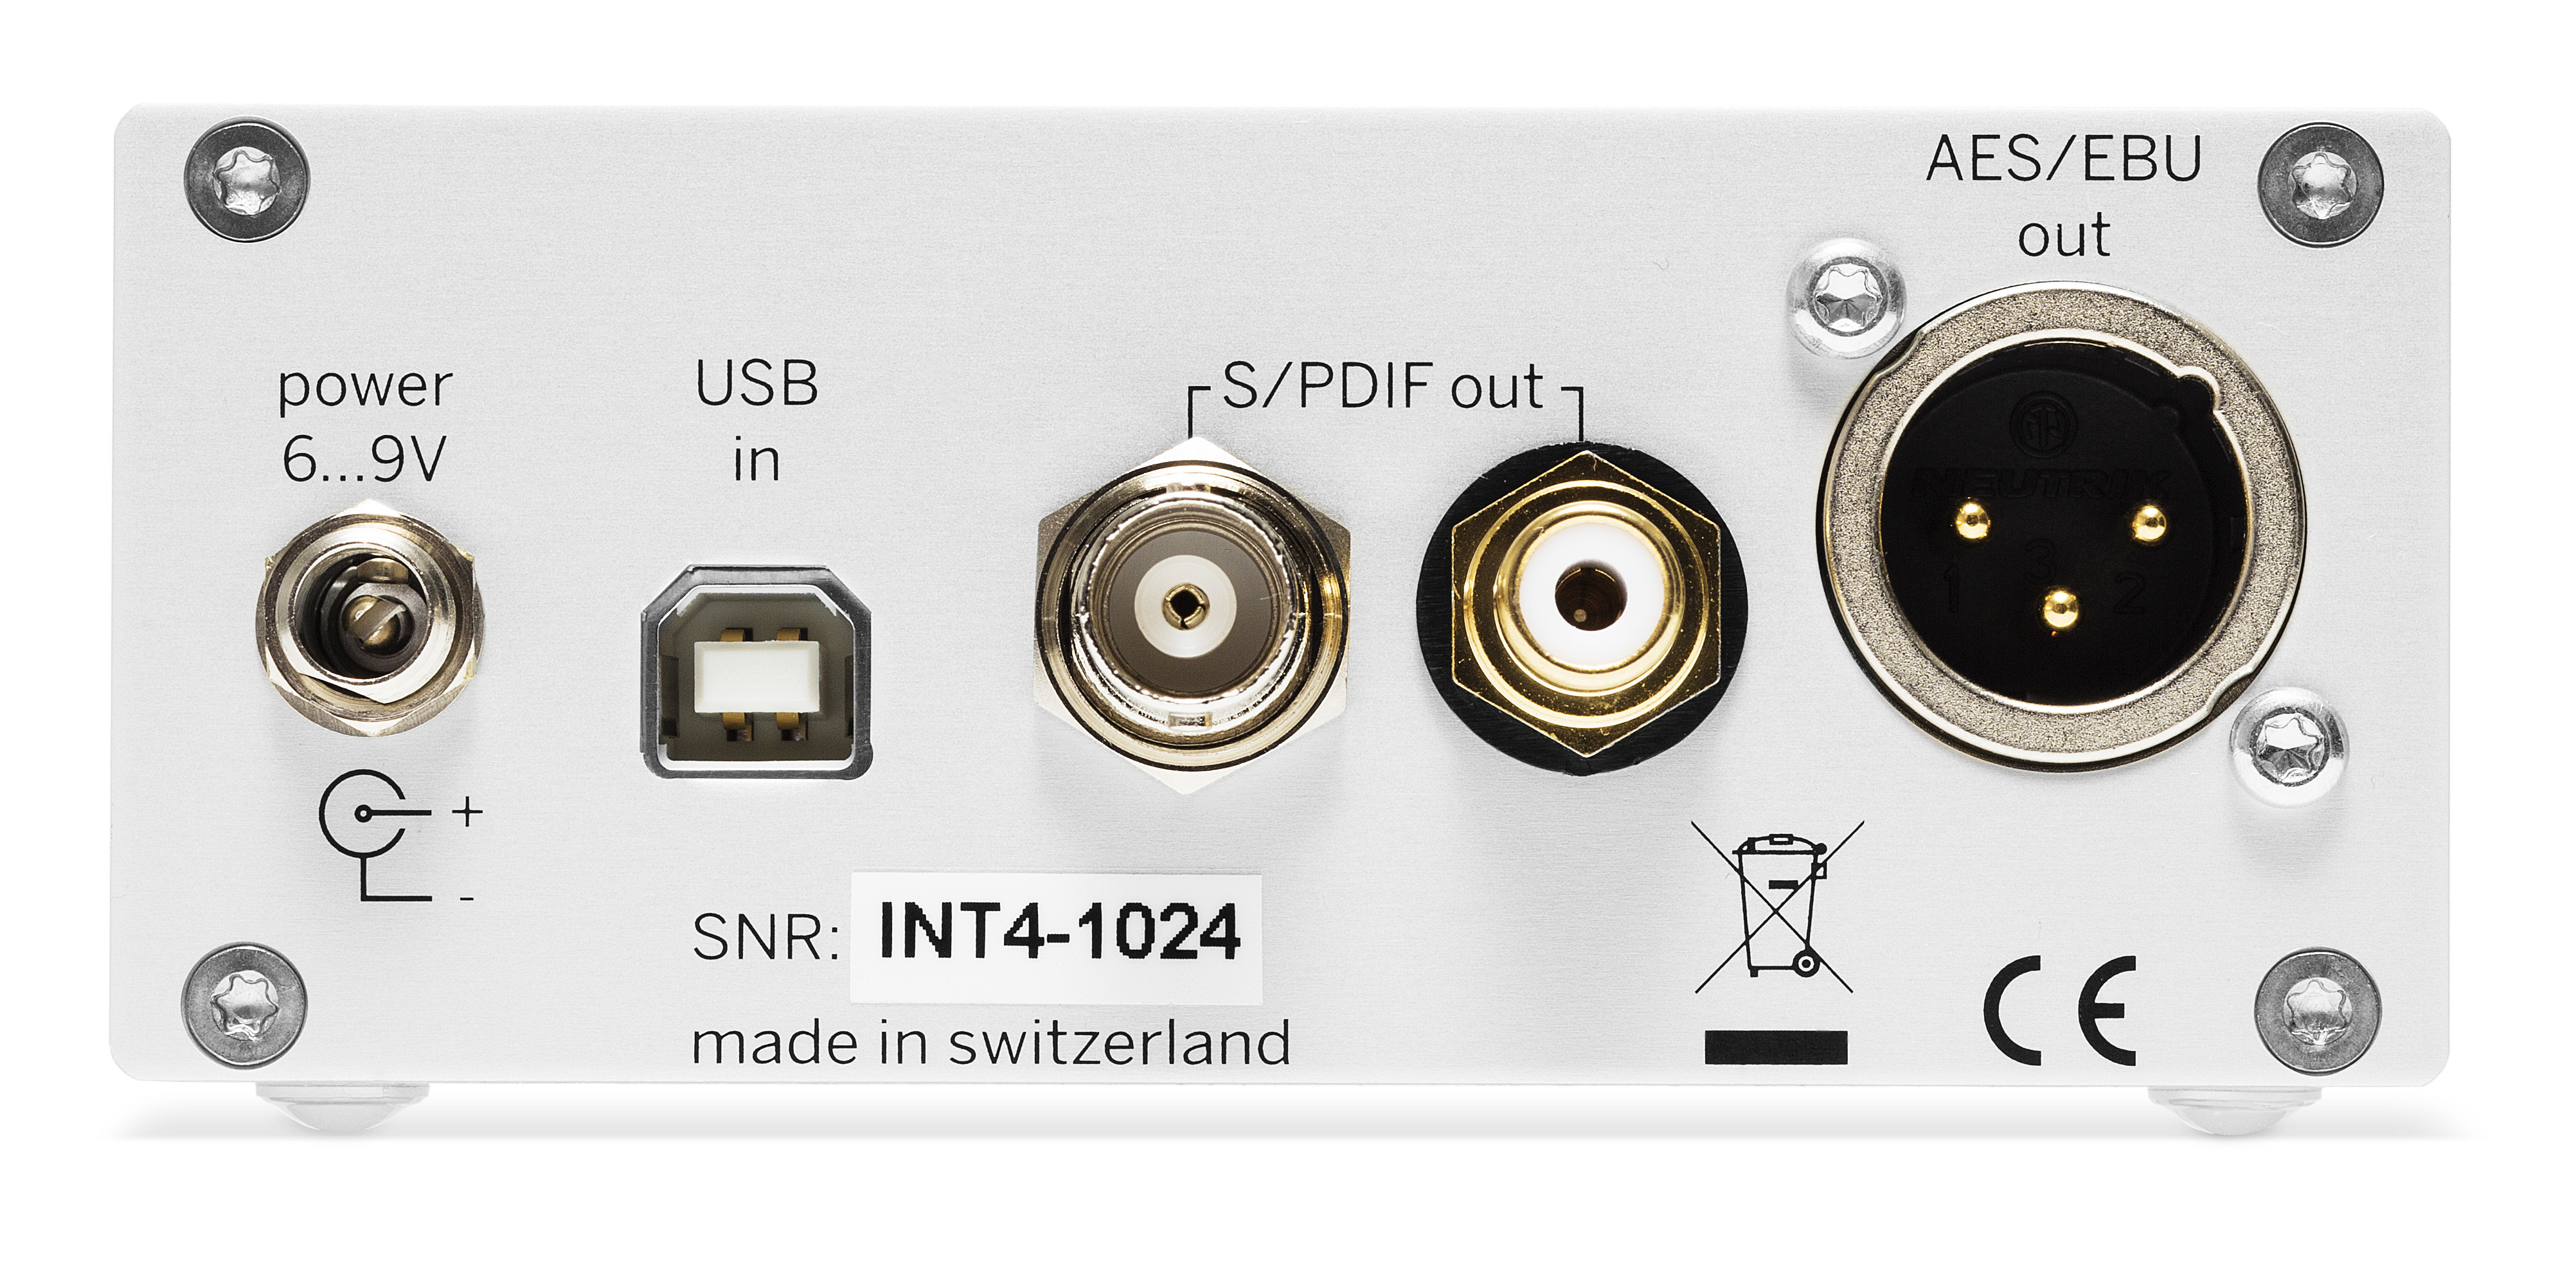 Weiss INT204 USB / DSD